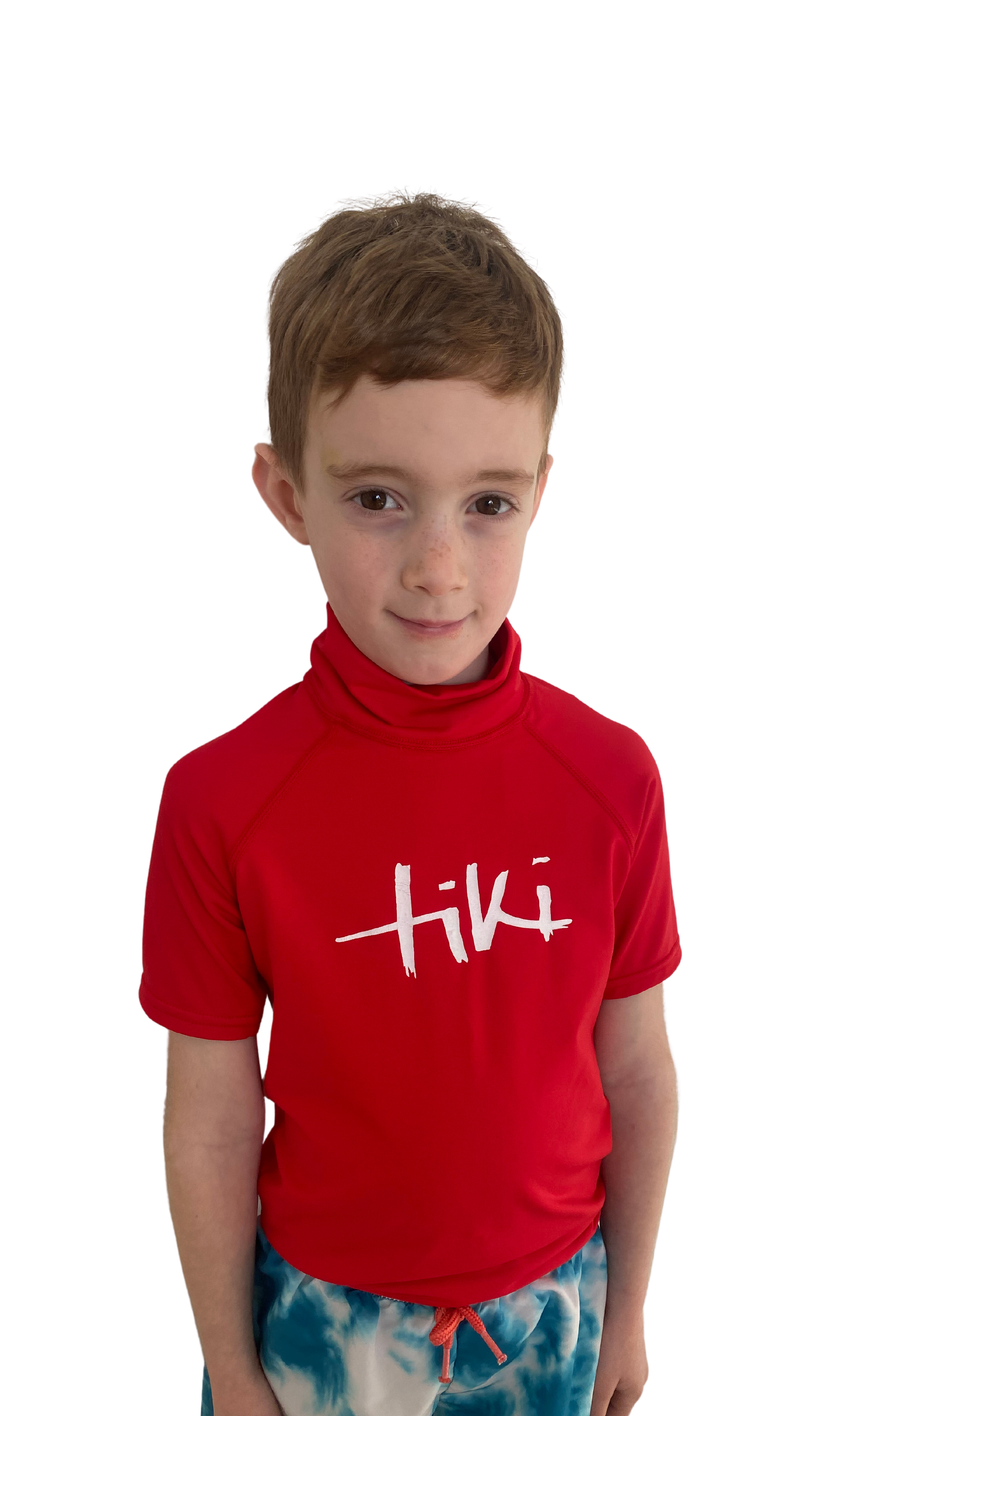 Tiki Kids S/S Rash Vest with Logo Red